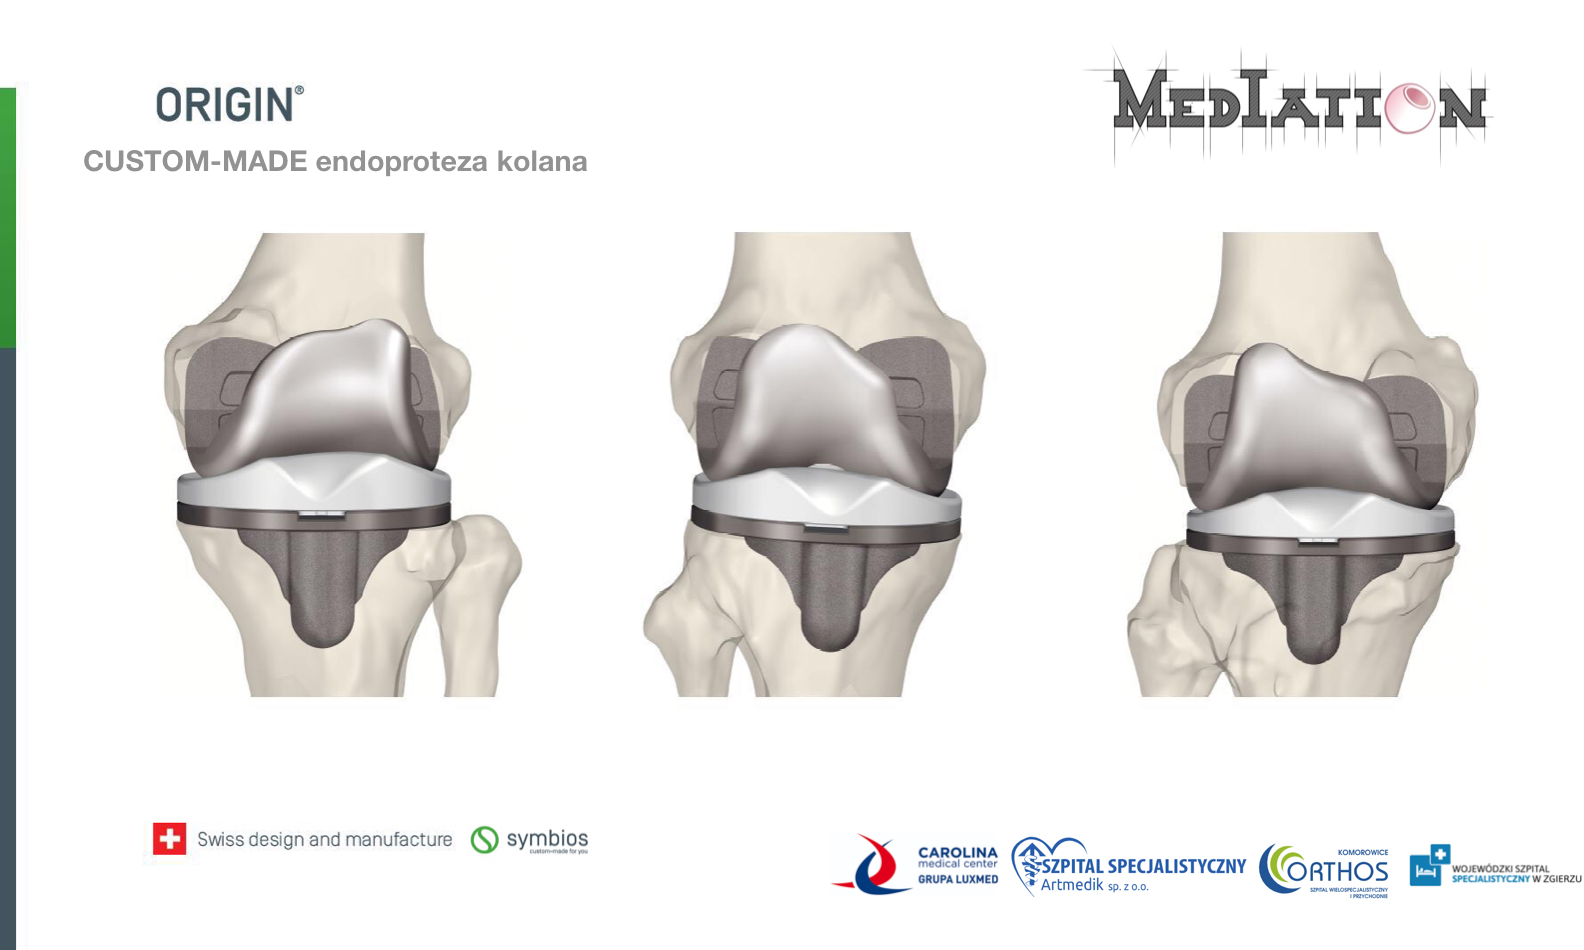 Personalizowane endoprotezy stawu biodrowego rewolucjonizują ortopedię. 